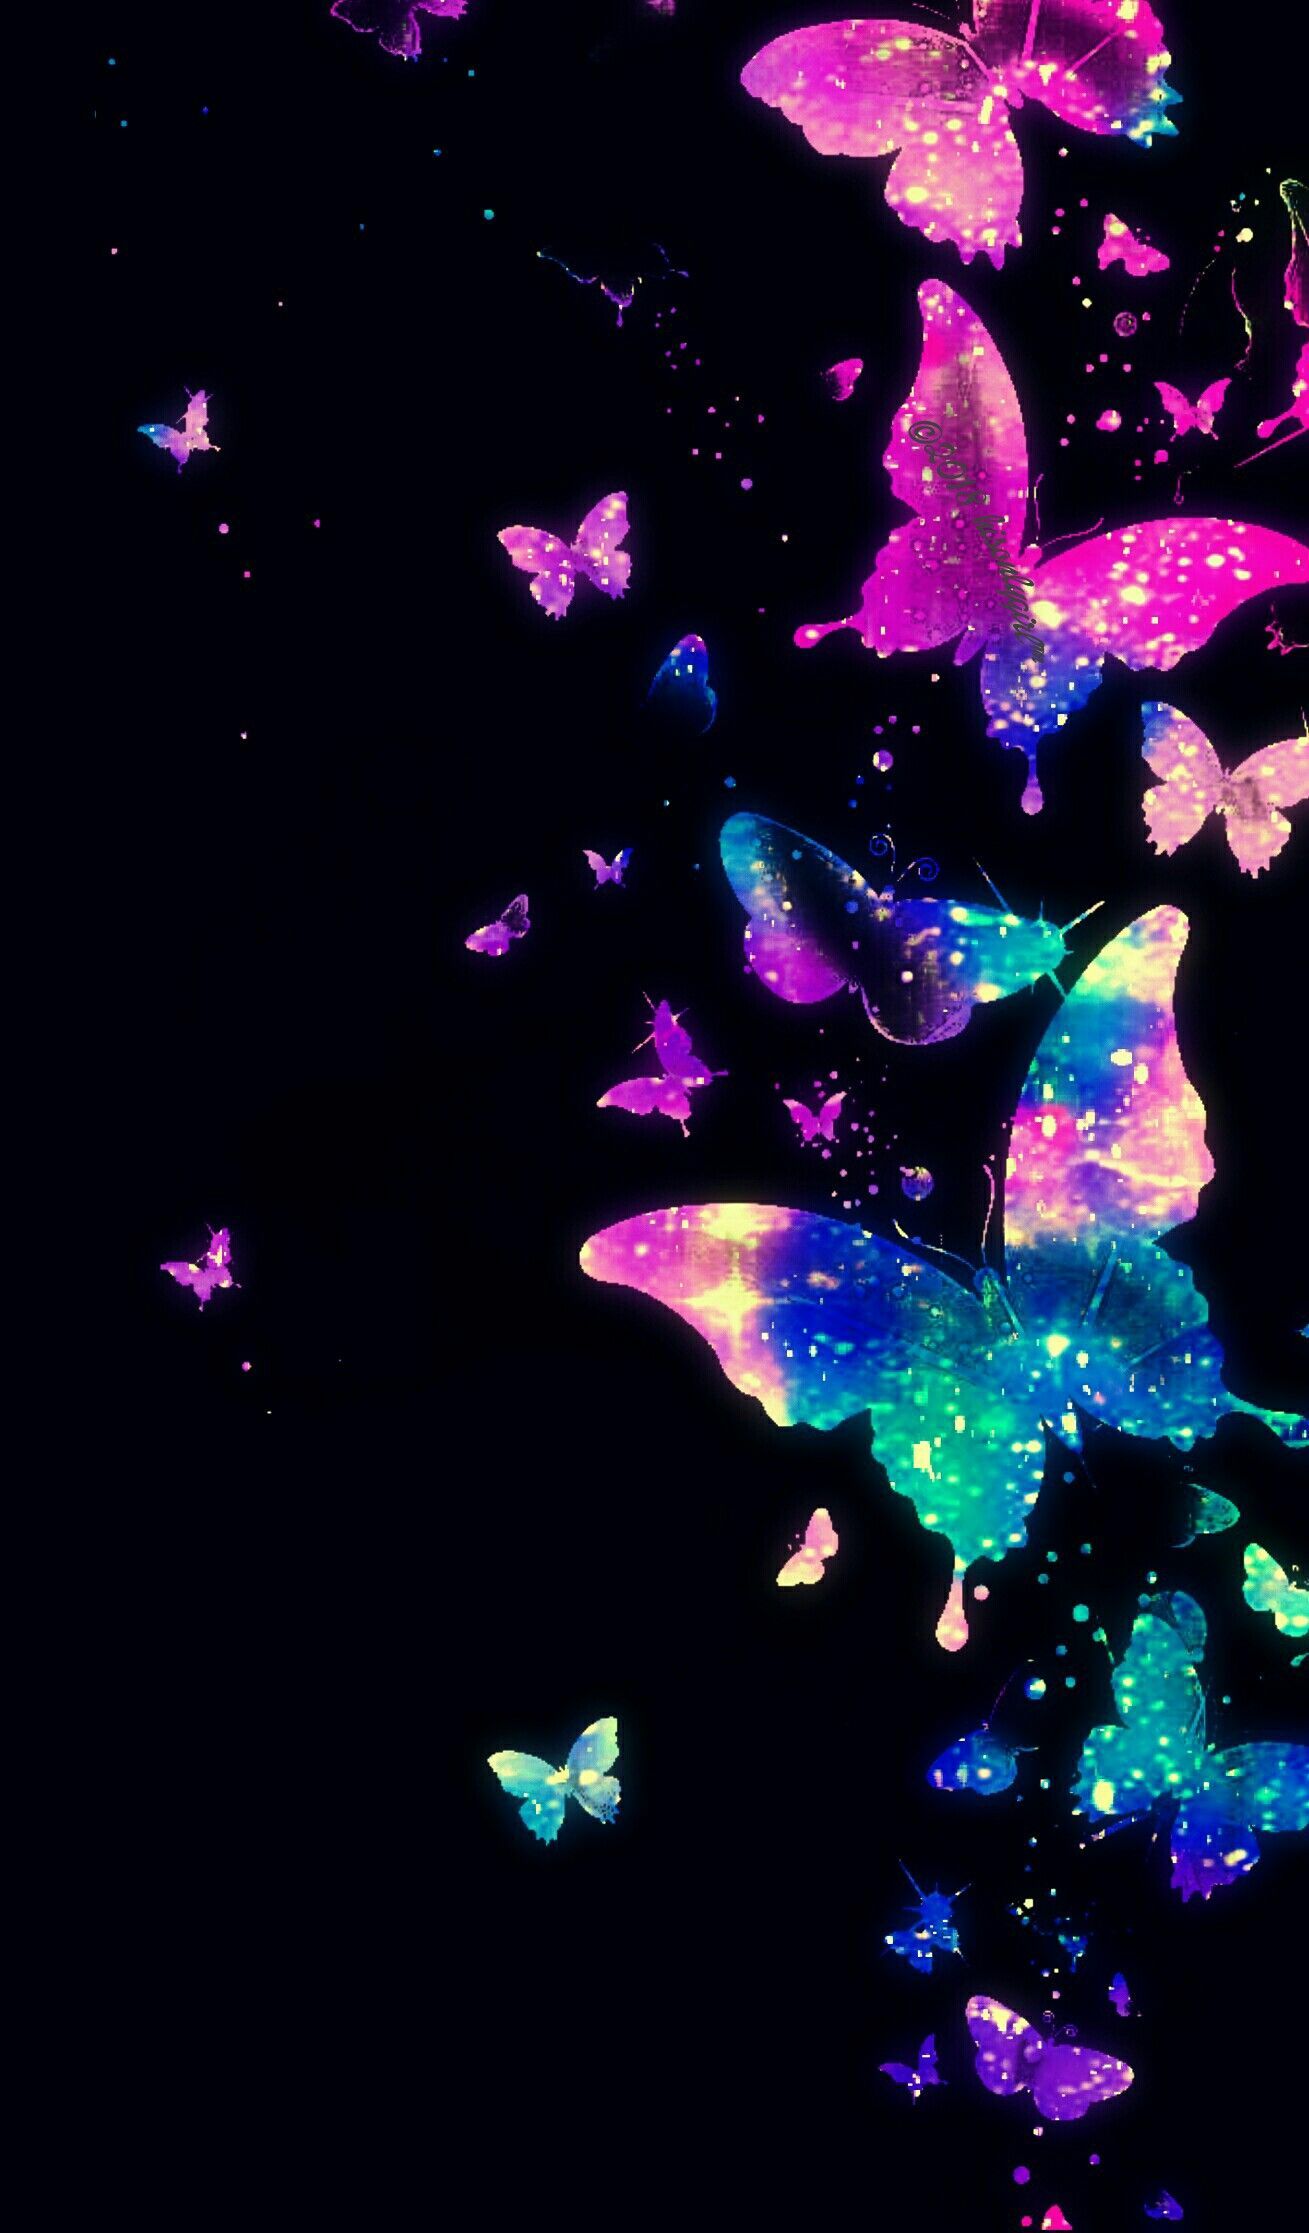 Bạn sẽ thích với bức hình nền Galaxy Butterfly, bởi đó là một hình nền hoàn hảo cho màn hình điện thoại của bạn. Với những tông màu xanh đen và xanh lá cây, hình ảnh bướm tinh tú sẽ mang đến cho bạn cảm giác năng động, tươi mới và cực kỳ thú vị. Không chỉ là vật nuôi trên trời vô cùng đẹp mắt mà còn là món quà cho đôi mắt của bạn!